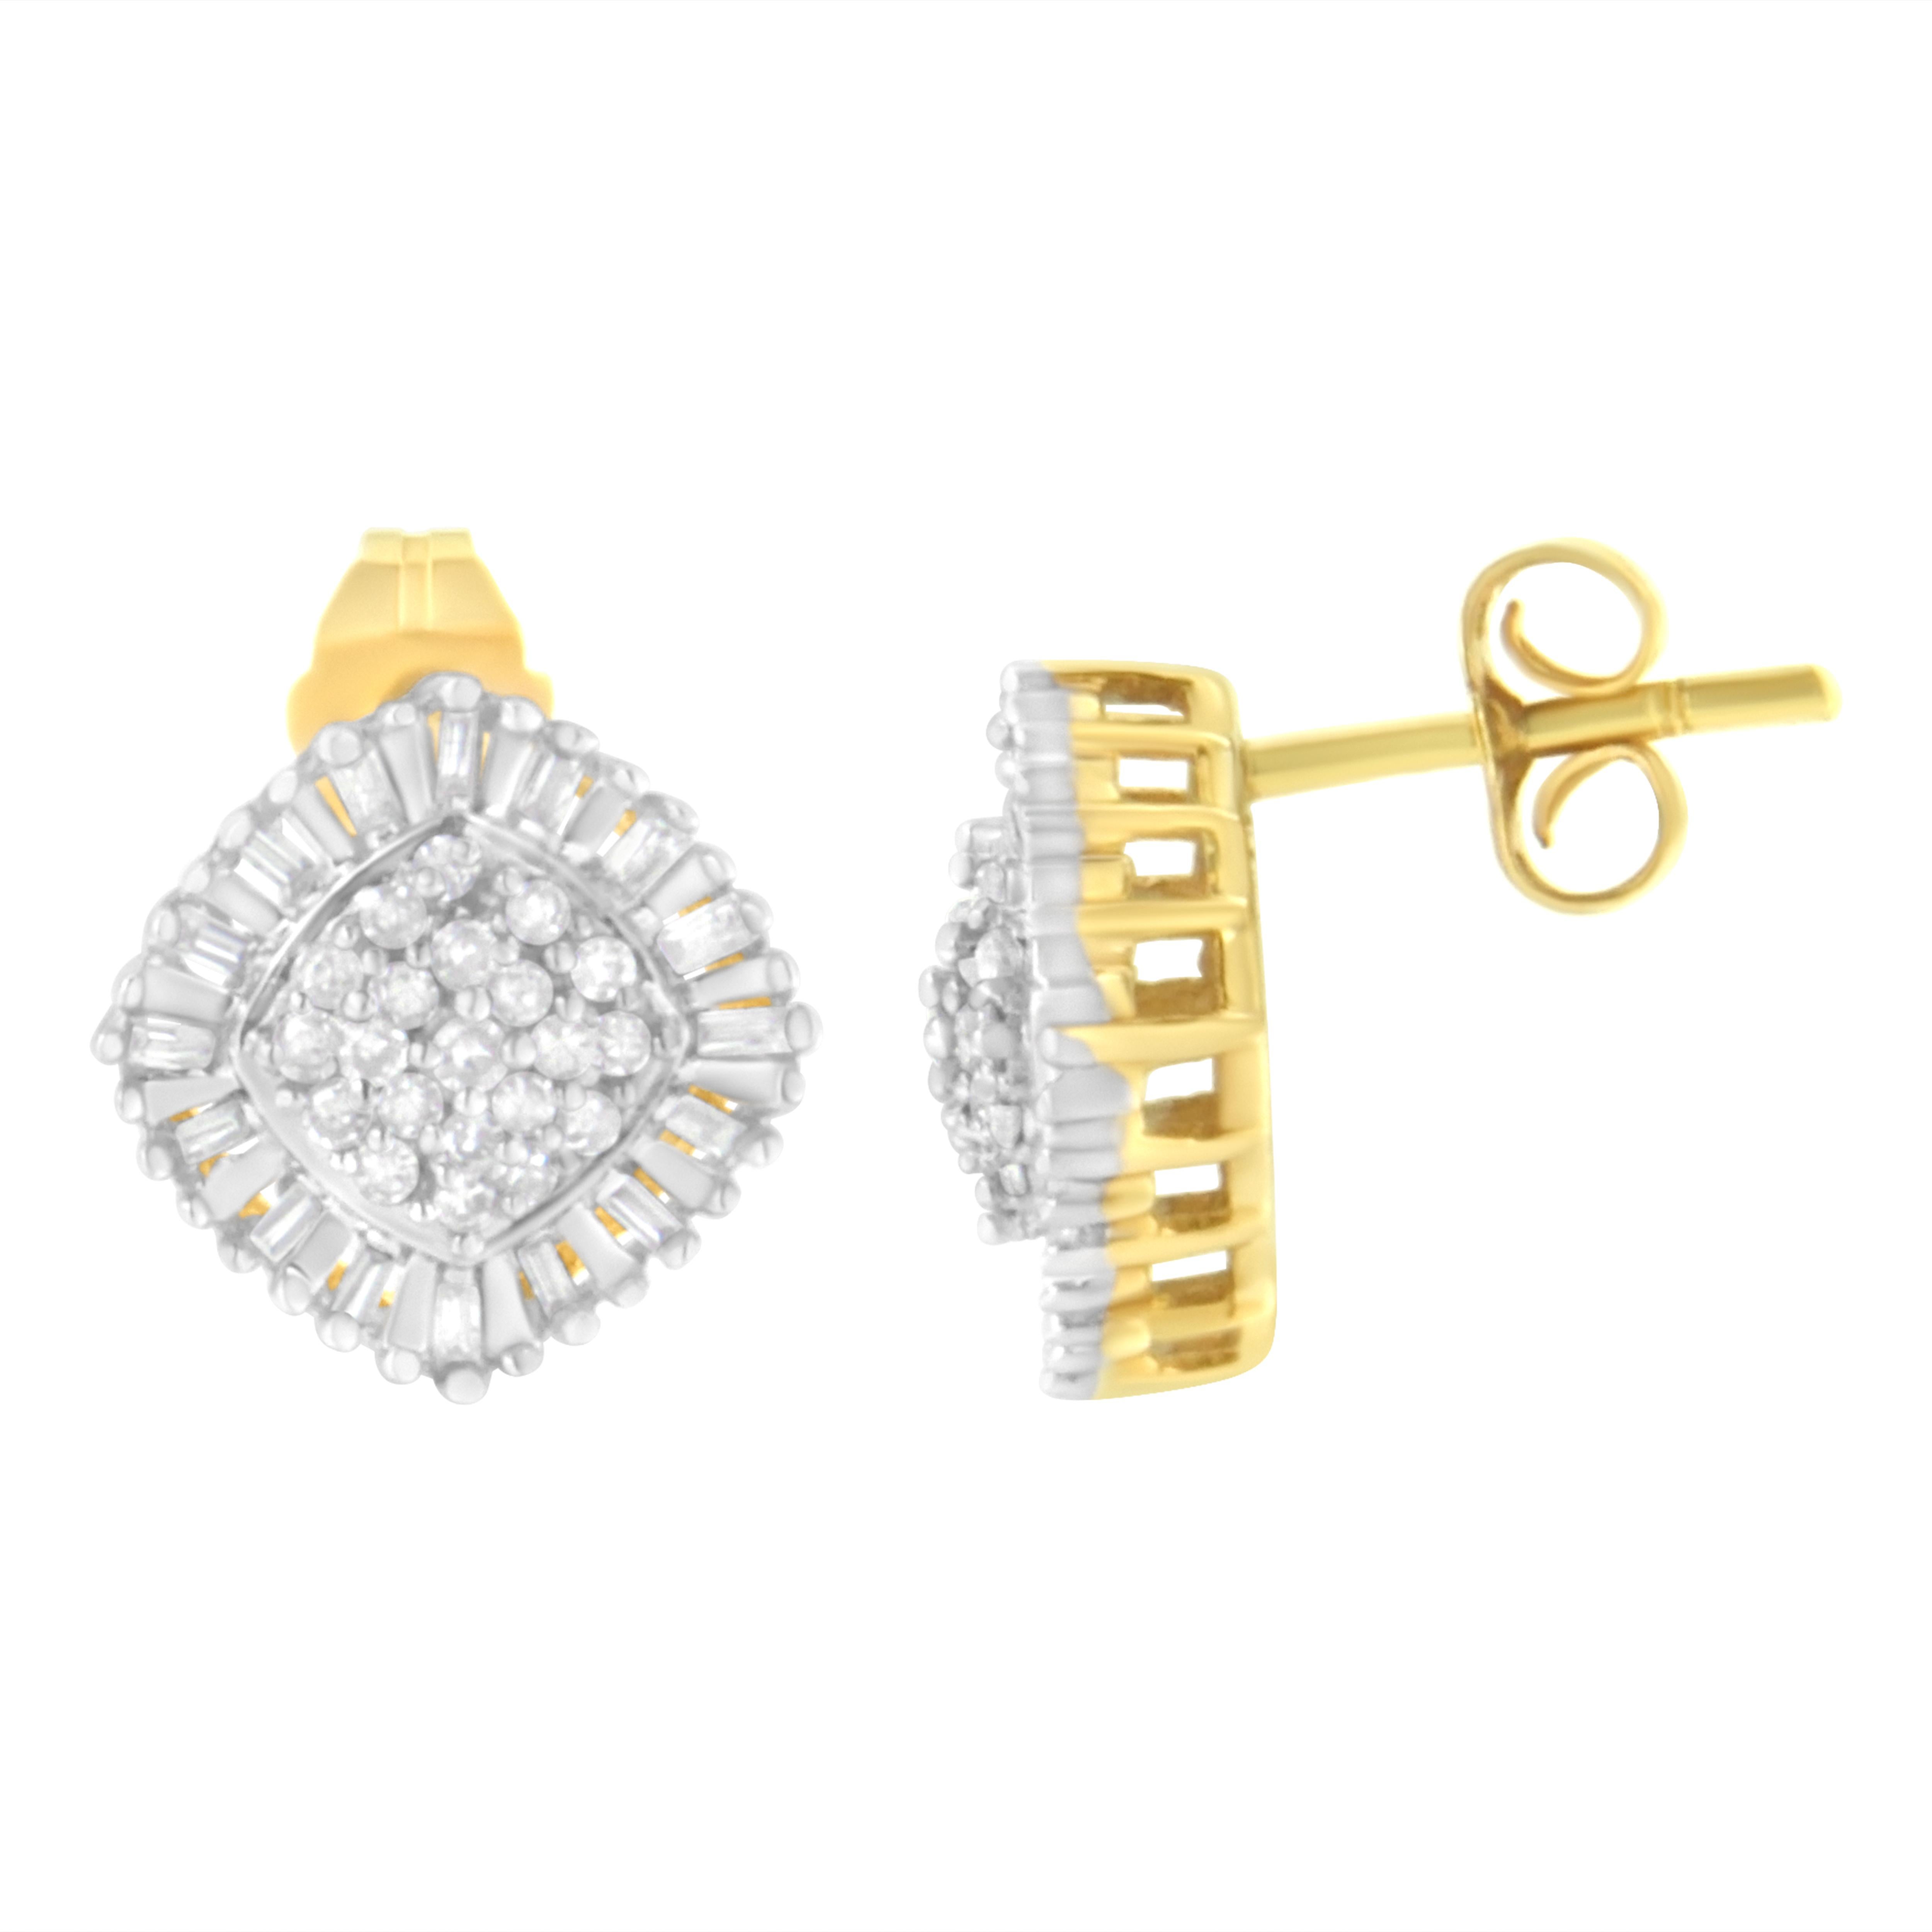 Diese atemberaubenden Cluster-Ohrringe funkeln mit 1/2ct TDW an Diamanten. Ein runder Diamantencluster ist von einem Baguette-Diamantenhalo umgeben. Diese Ohrstecker aus 10 Karat Gelbgold sind die perfekte Ergänzung für jedes Outfit. Ein